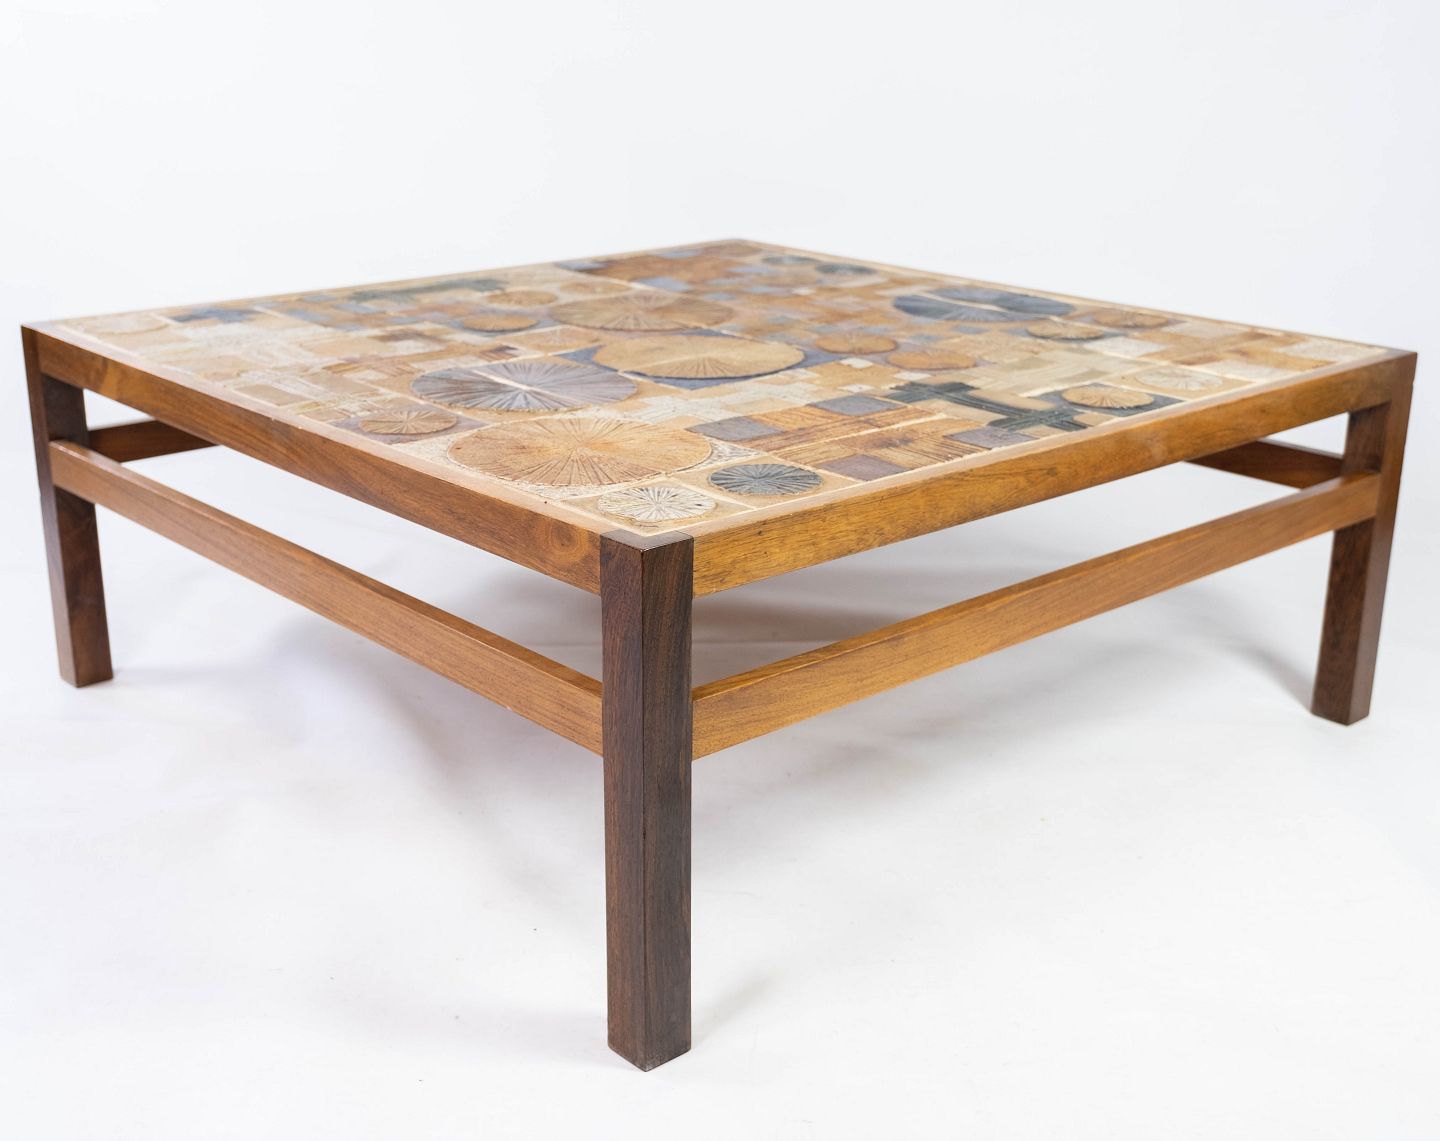 Sofabord af palisander samt keramik designet af Tue Poulsen og fremstill - & Design